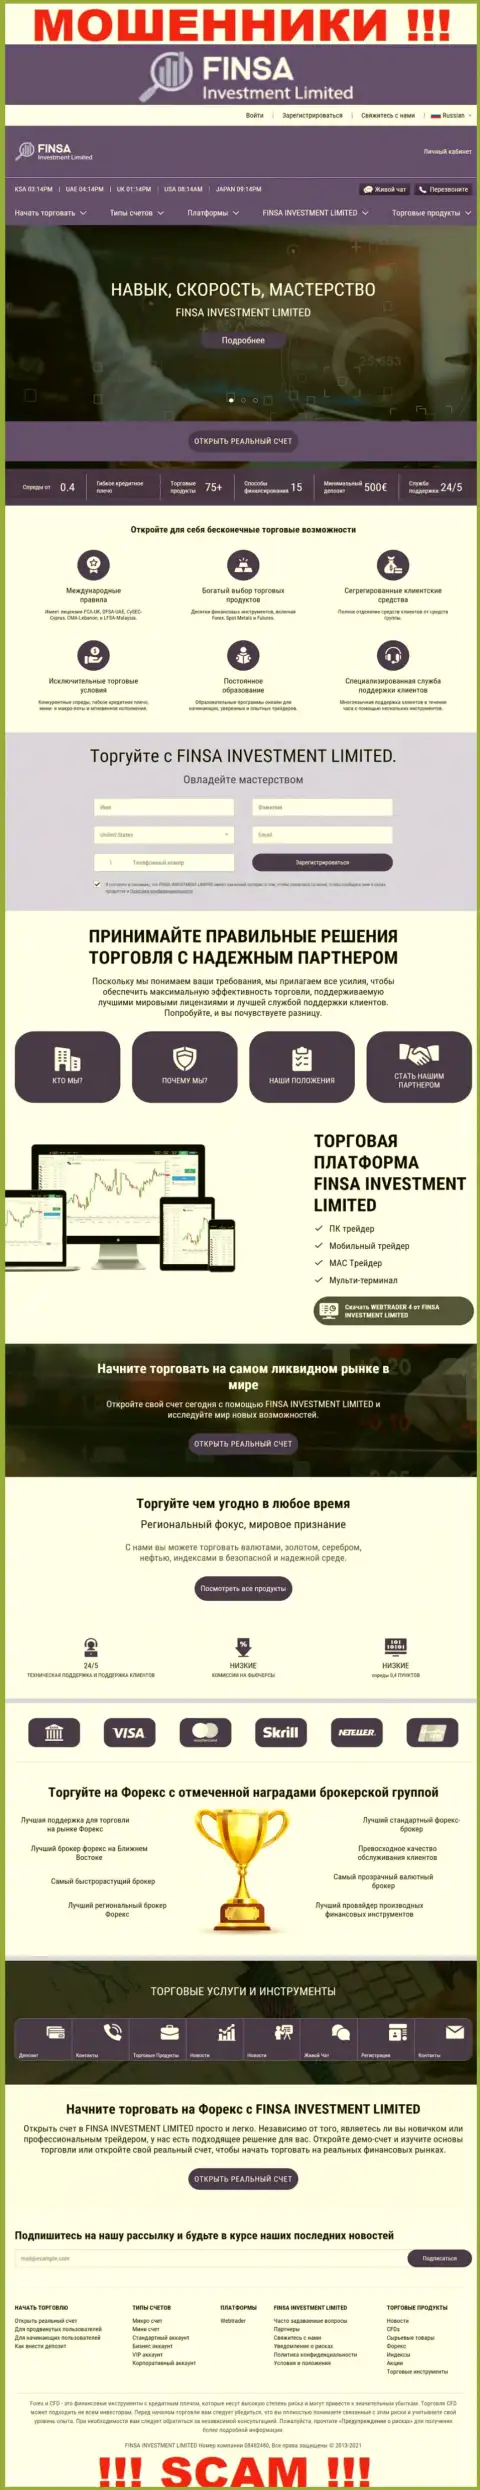 Веб-ресурс компании FinsaInvestment Limited, переполненный фейковой инфой